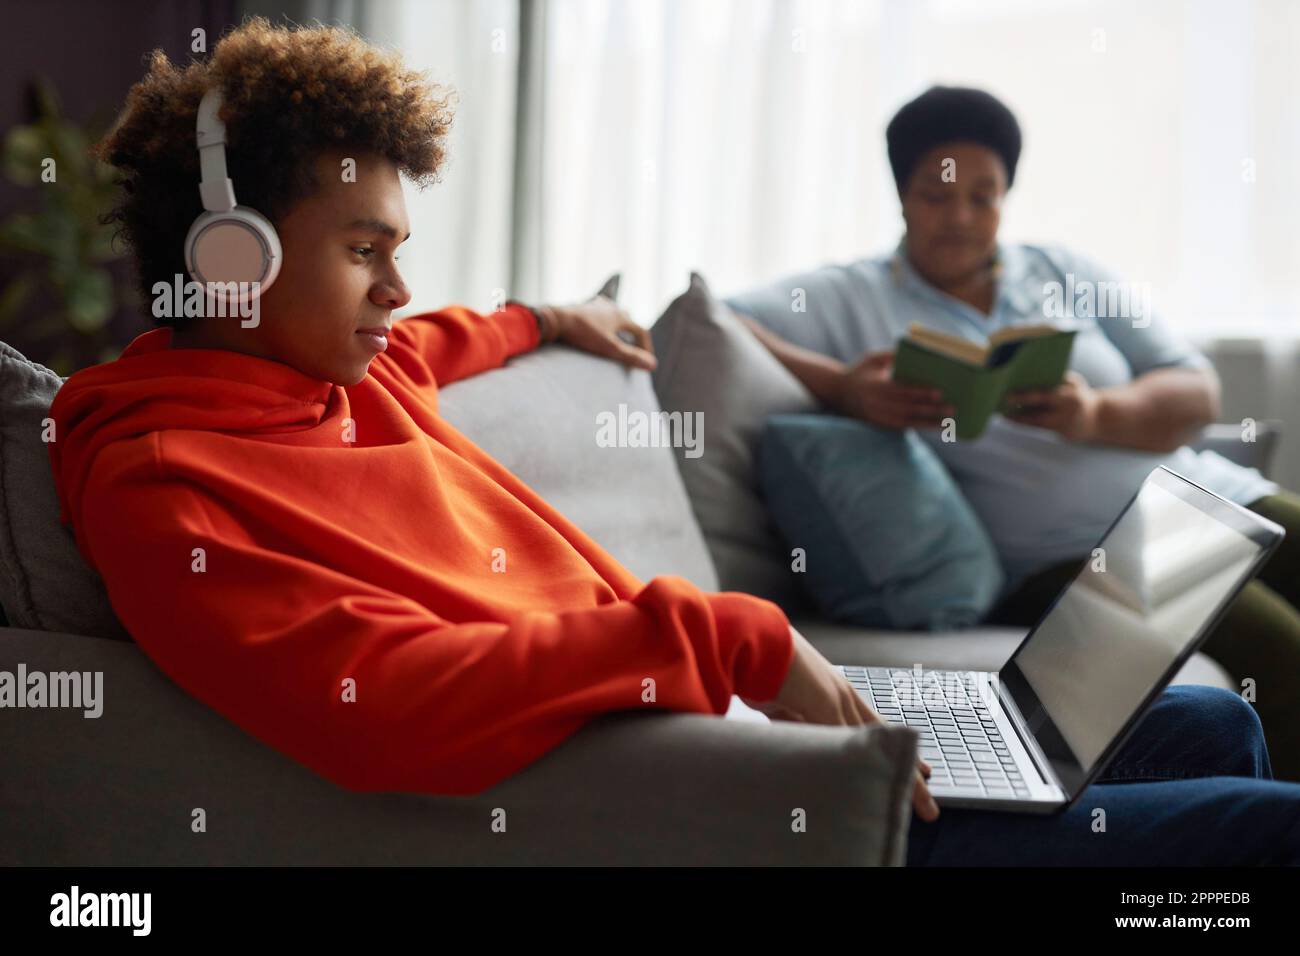 Seitenansicht eines Jungen im Teenageralter mit Kopfhörern und rotem Hoodie, der sich einen Online-Film oder ein Video auf dem Laptop-Bildschirm ansieht, während eine Frau ein Buch liest Stockfoto